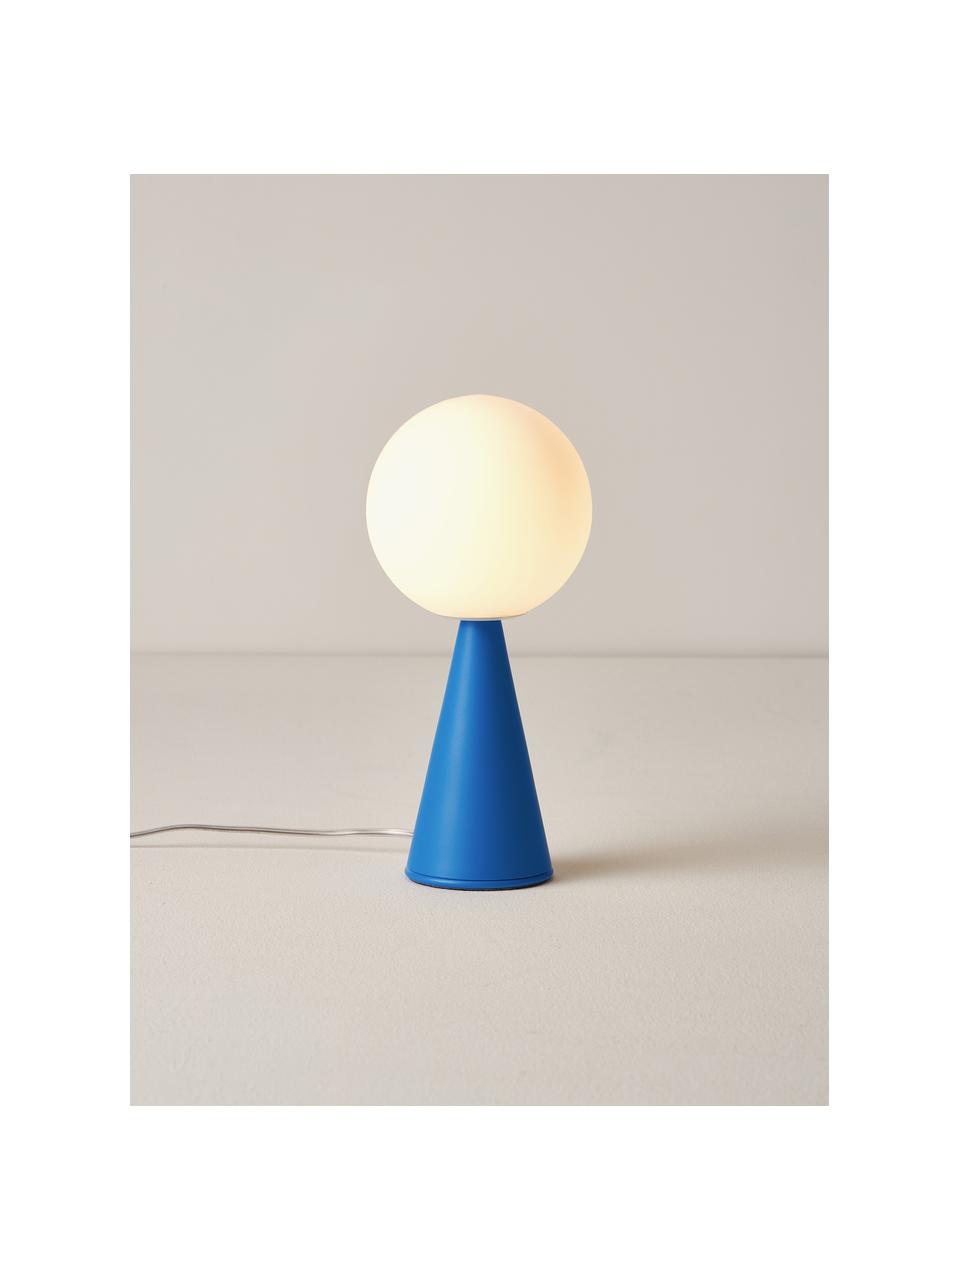 Lámpara de mesa artesanal pequeña Bilia, Pantalla: vidrio, Estructura: metal recubierto, Cable: plástico, Blanco, azul, Ø 12 x Al 26 cm